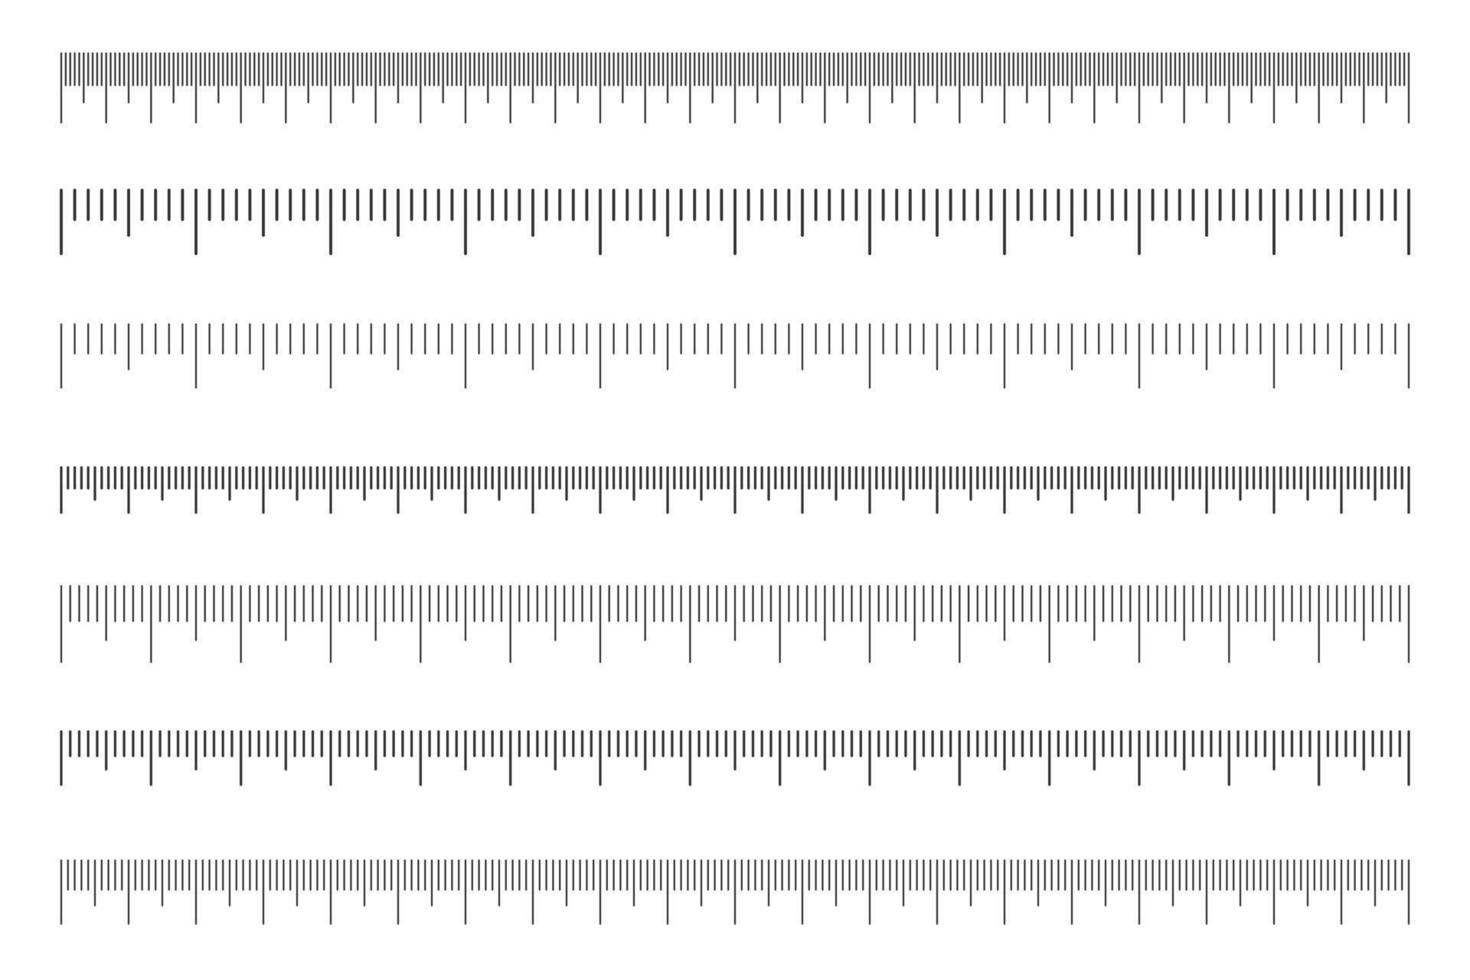 escala del conjunto de reglas. Tabla de medidas horizontales con marcado en centímetros y milímetros. medición de distancia, altura o longitud herramienta matemática o de costura vector